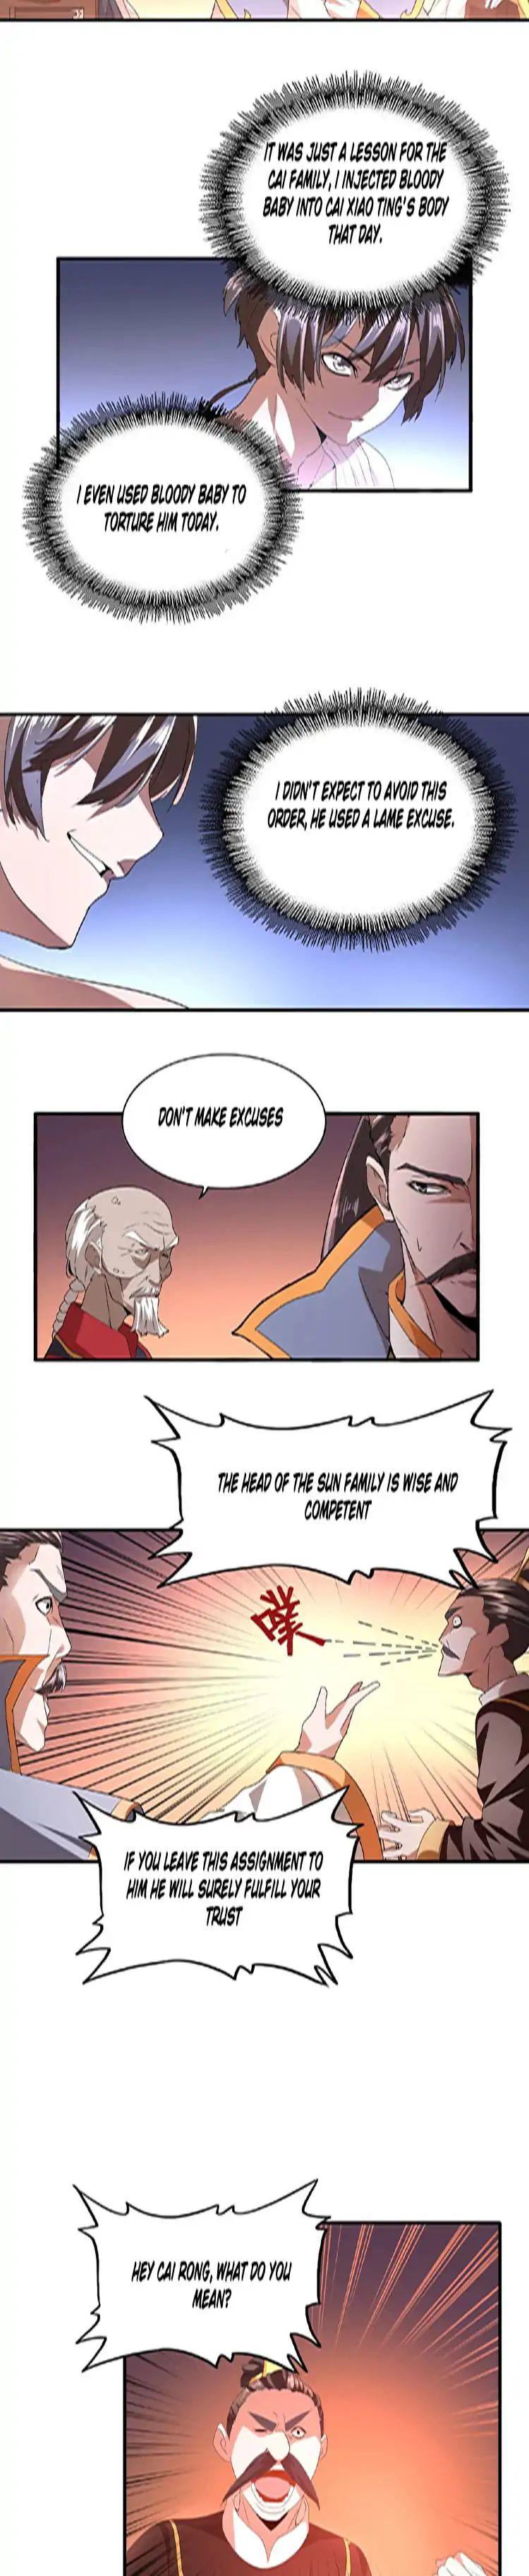 Magic Emperor Chapter 13 page 8 - Mangakakalot